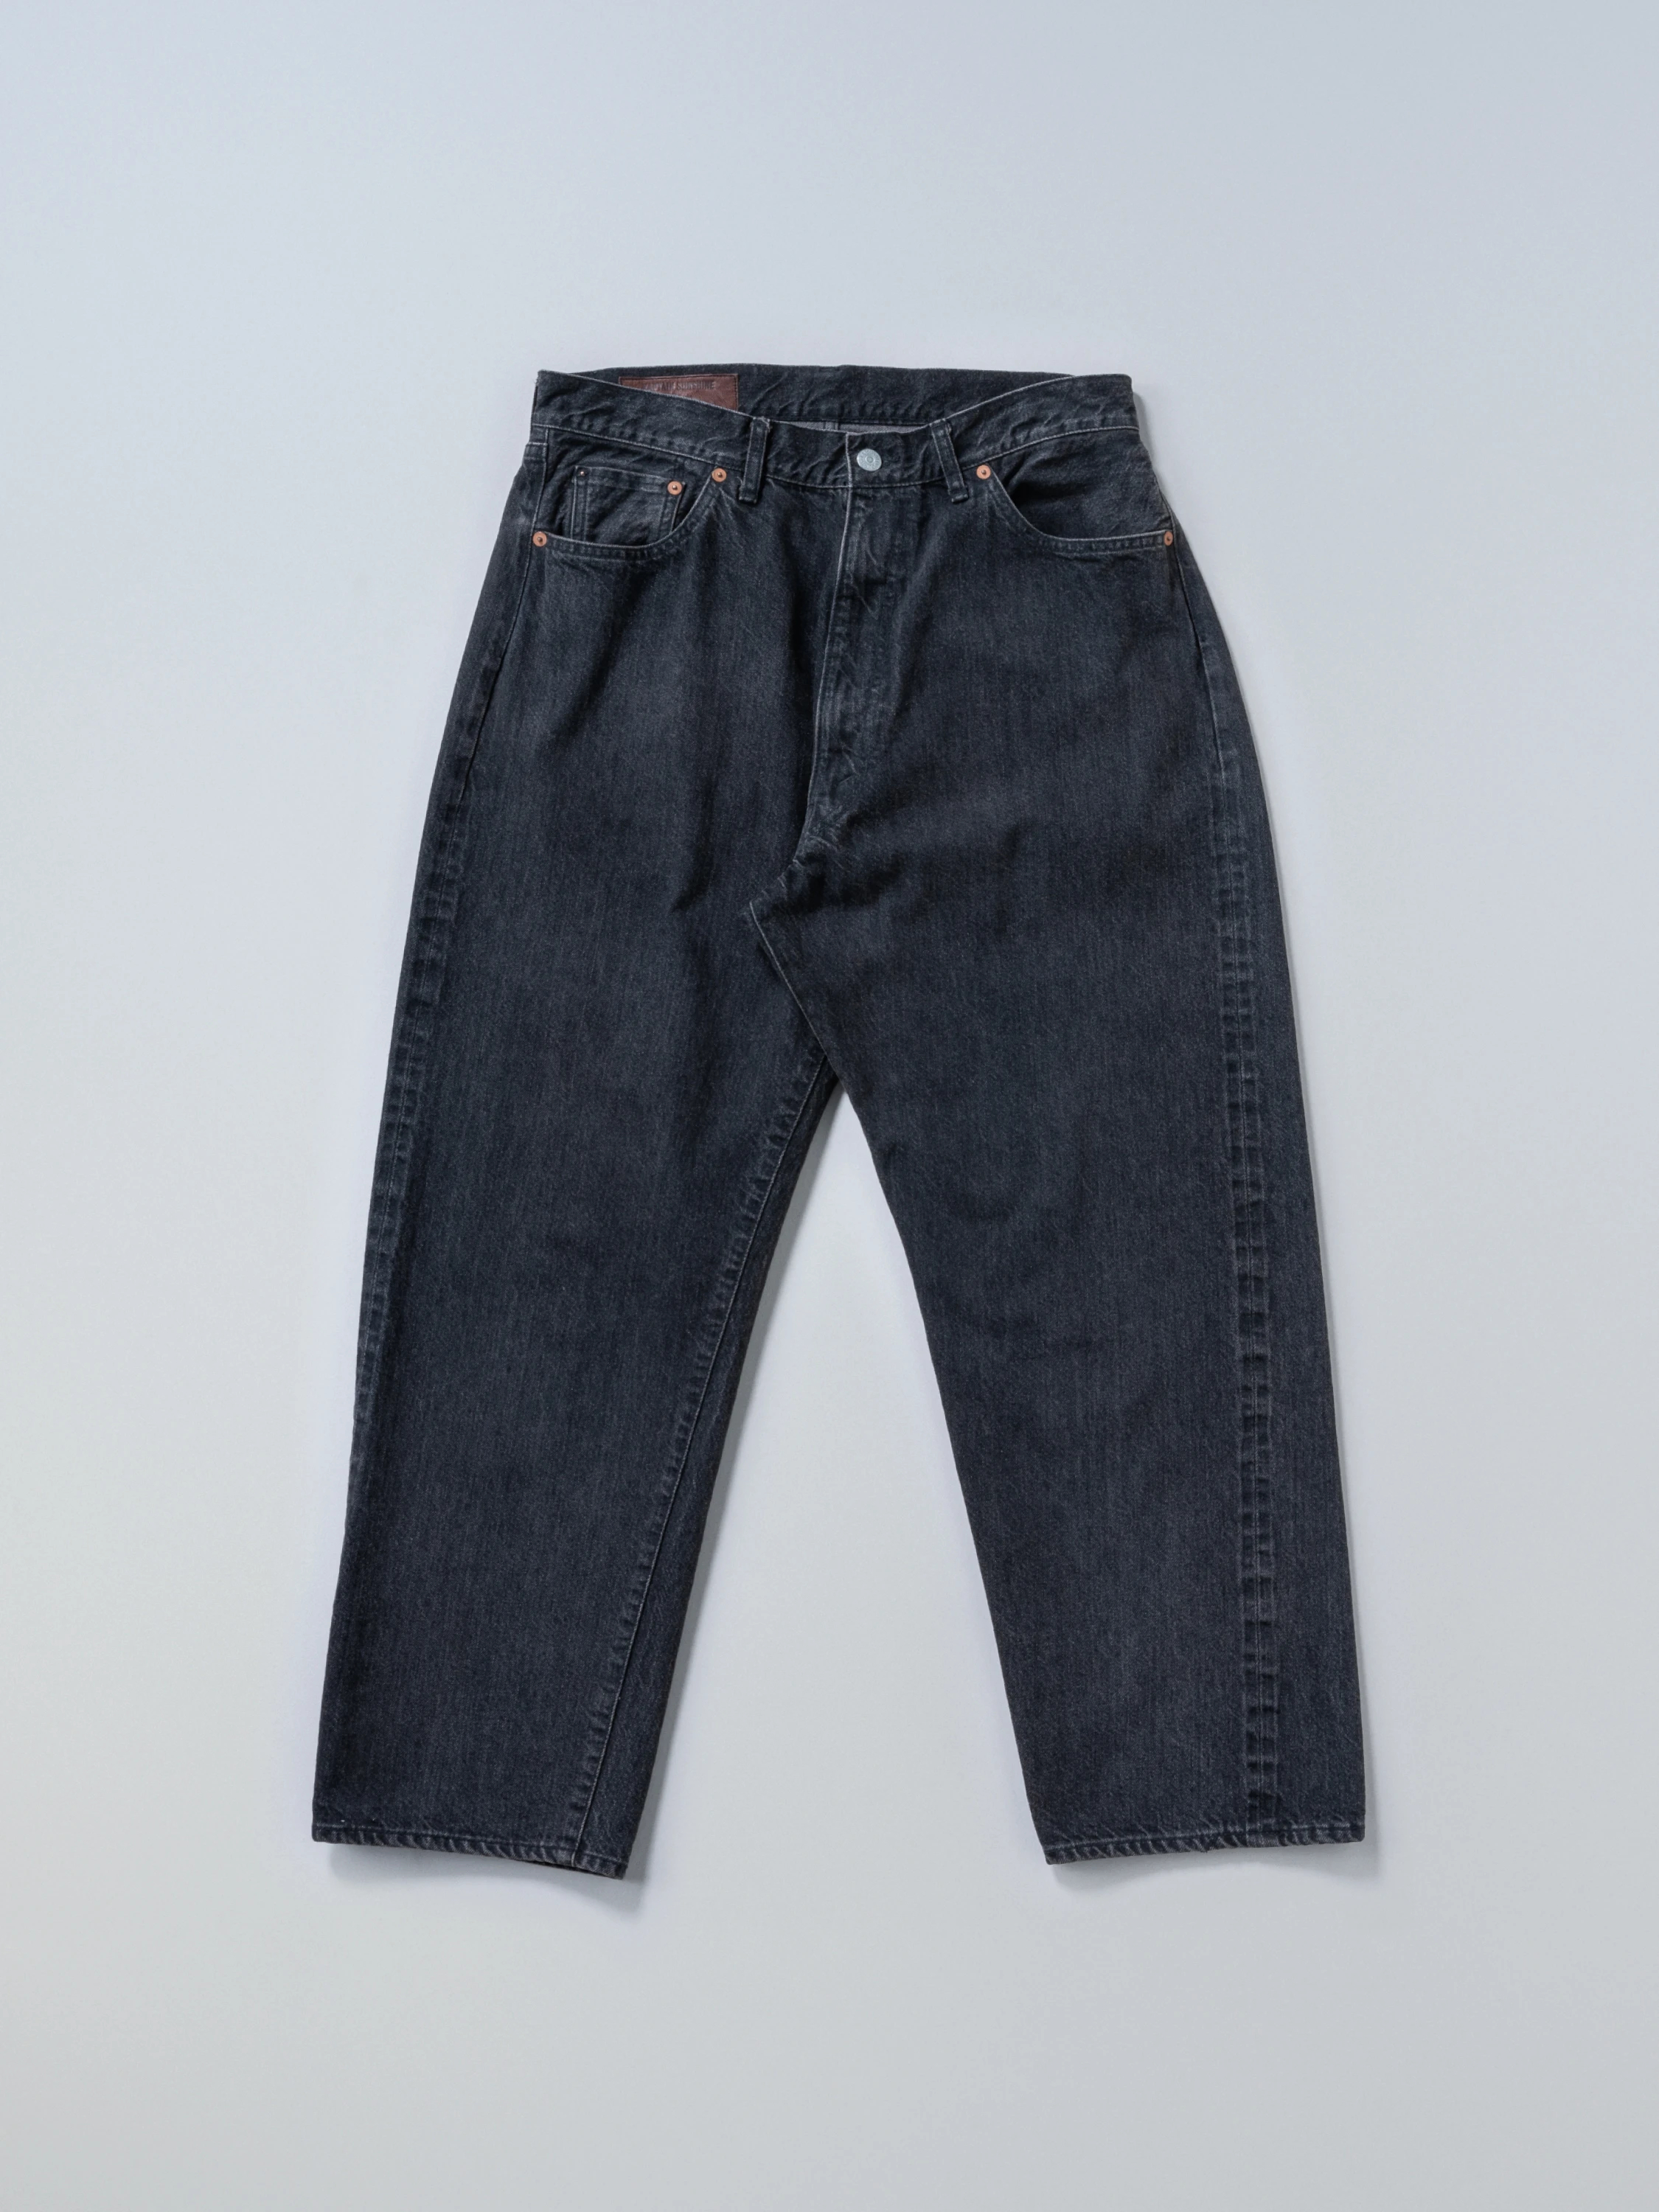 KAPTAIN SUNSHINE(キャプテンサンシャイン) |5P Zipper Front Denim Pants